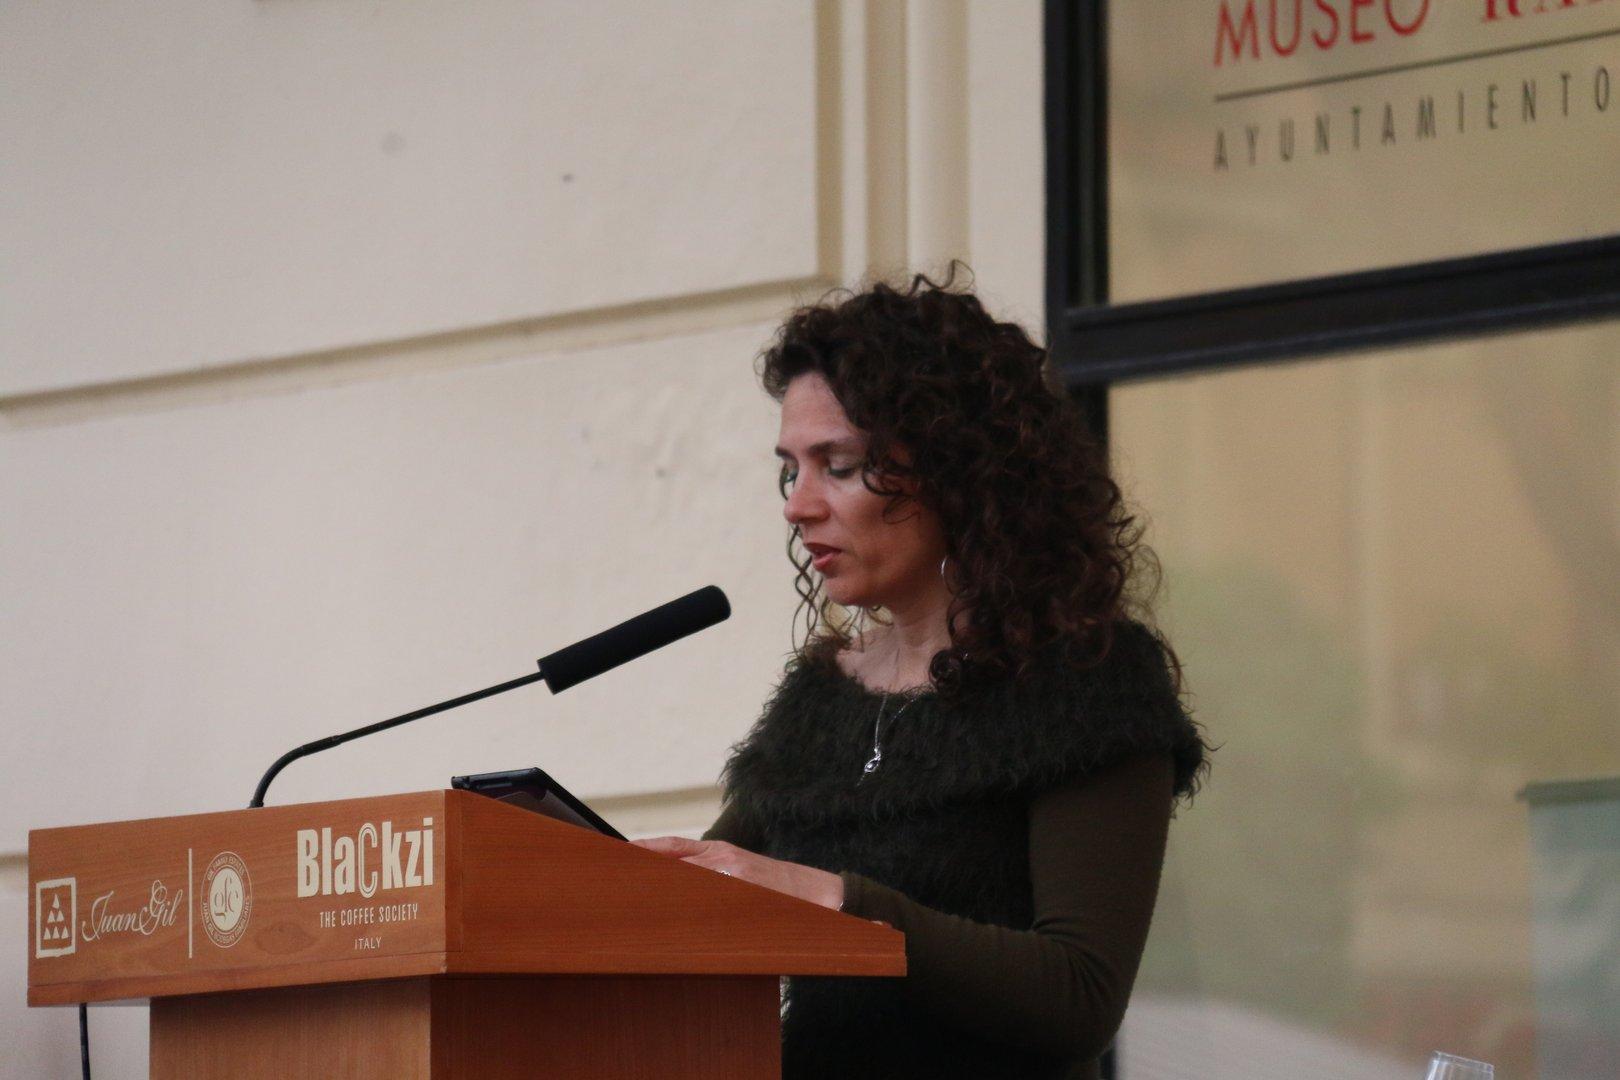 Día de la Poesía 2017 en Museo Ramón Gaya